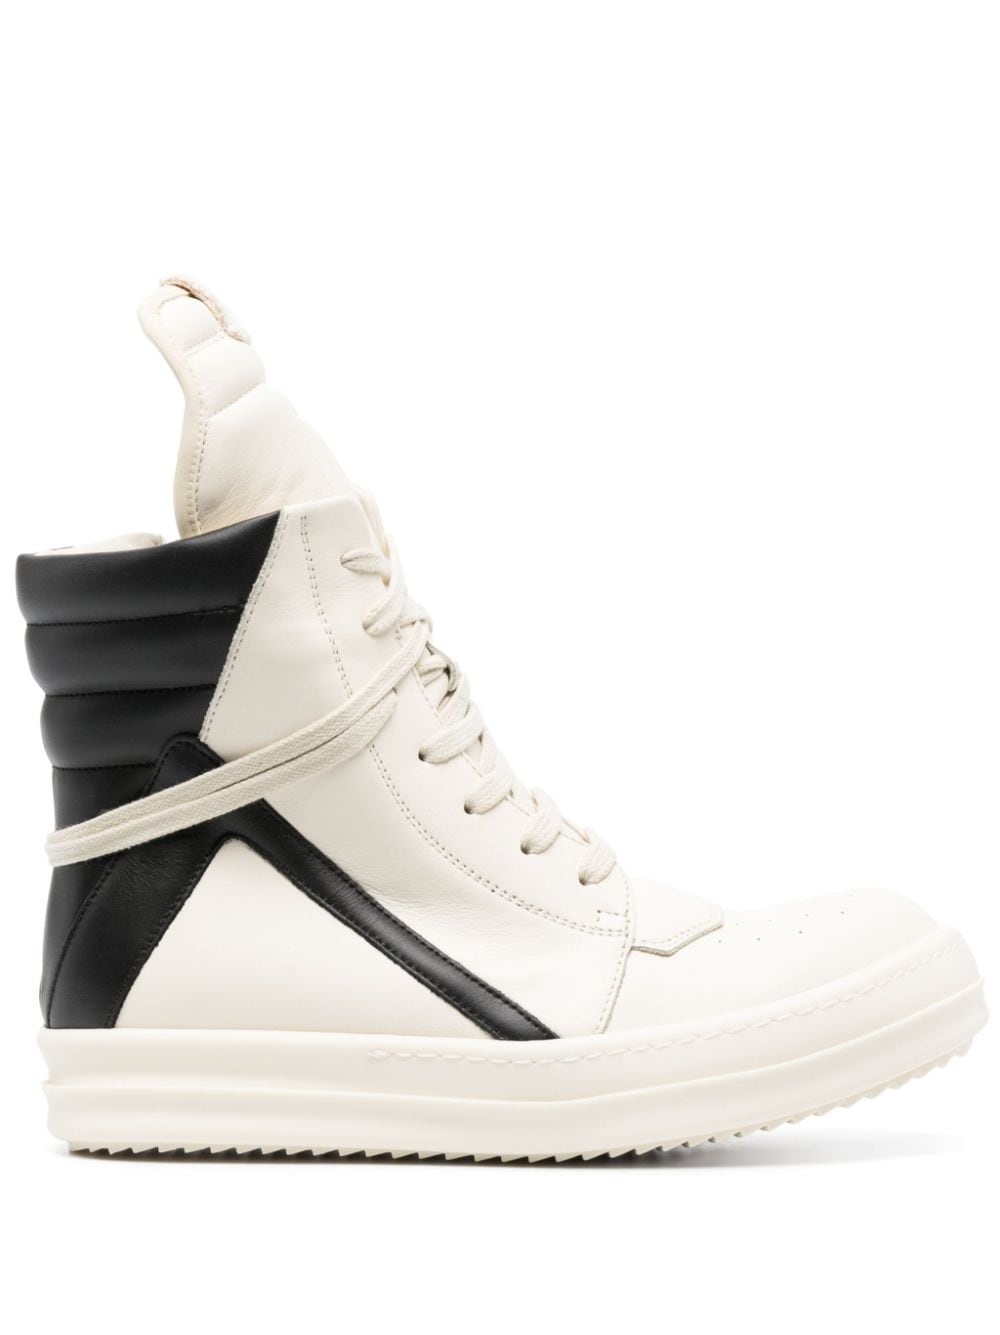 Moody Geobasket leather sneakers - 1